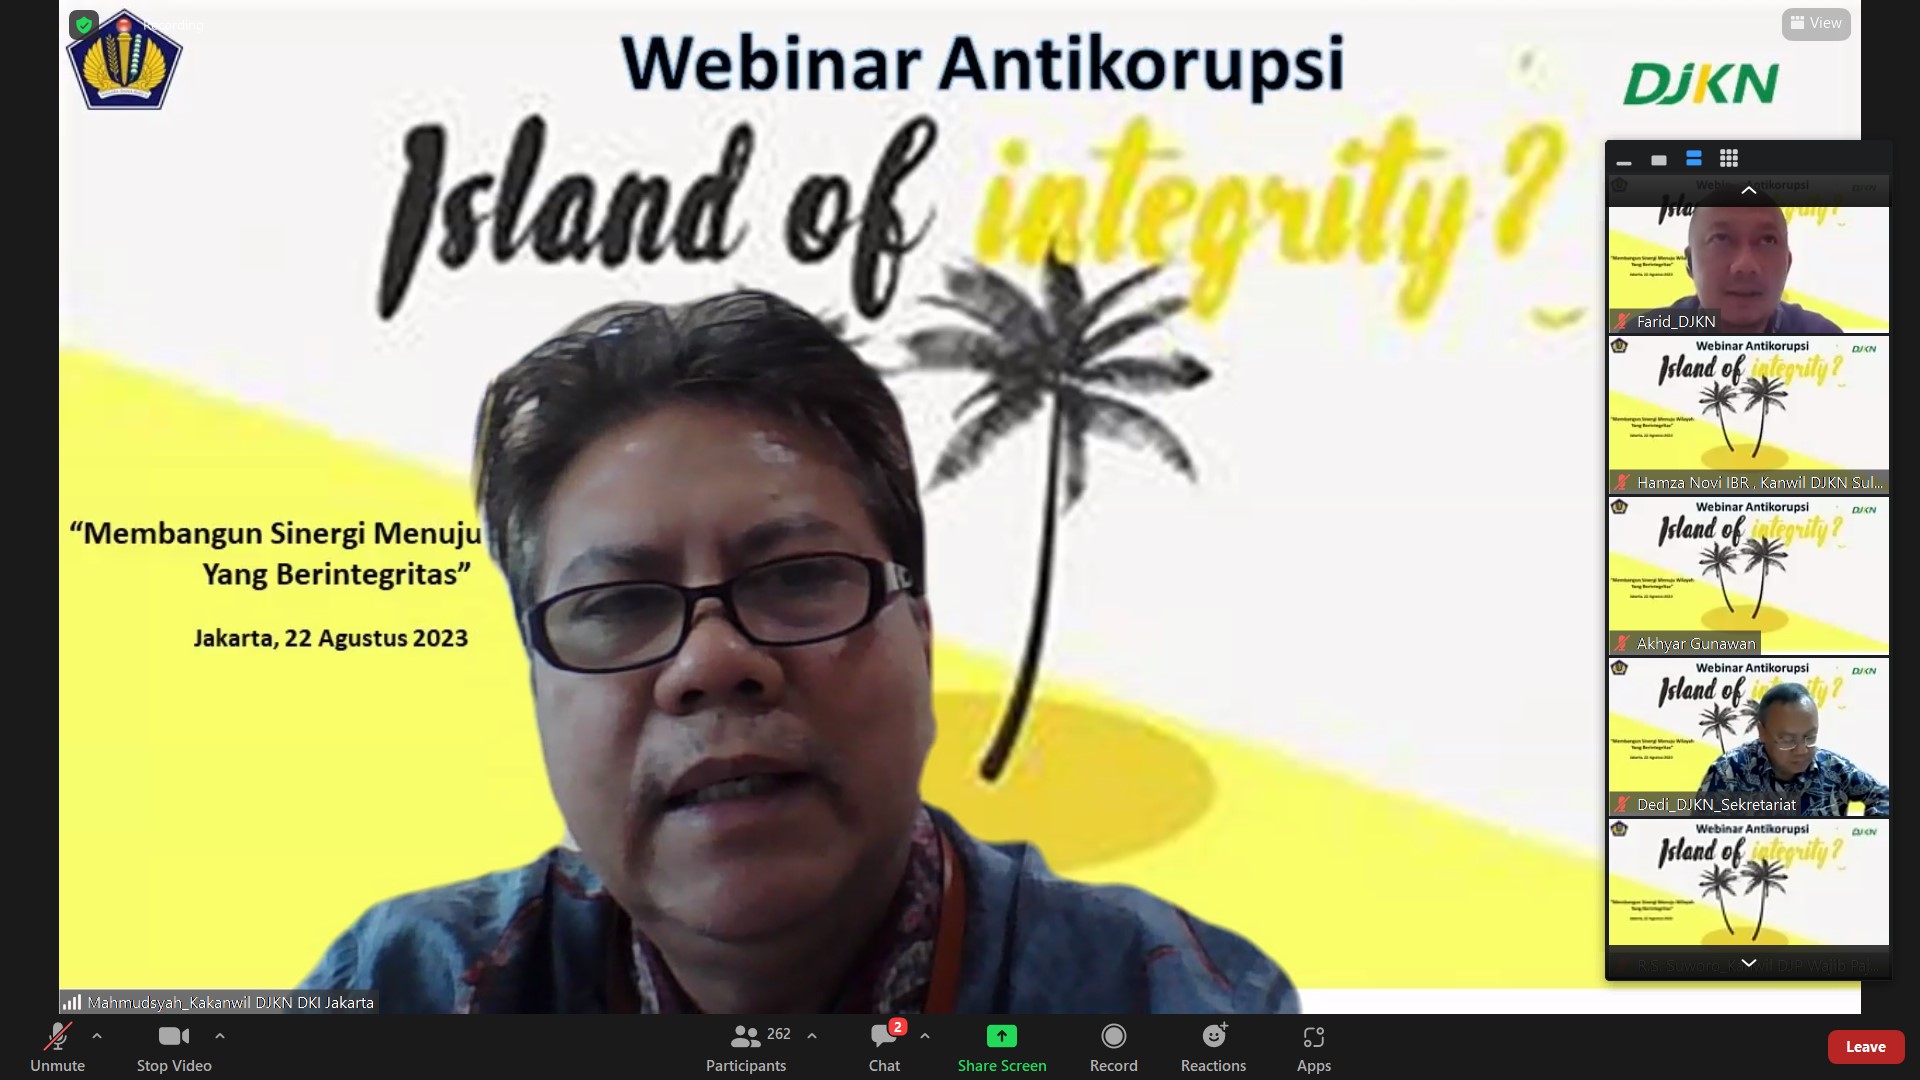 Webinar Antikorupsi, "Membangun Sinergi Menuju Wilayah yang Berintegritas" (Island of Integrity)